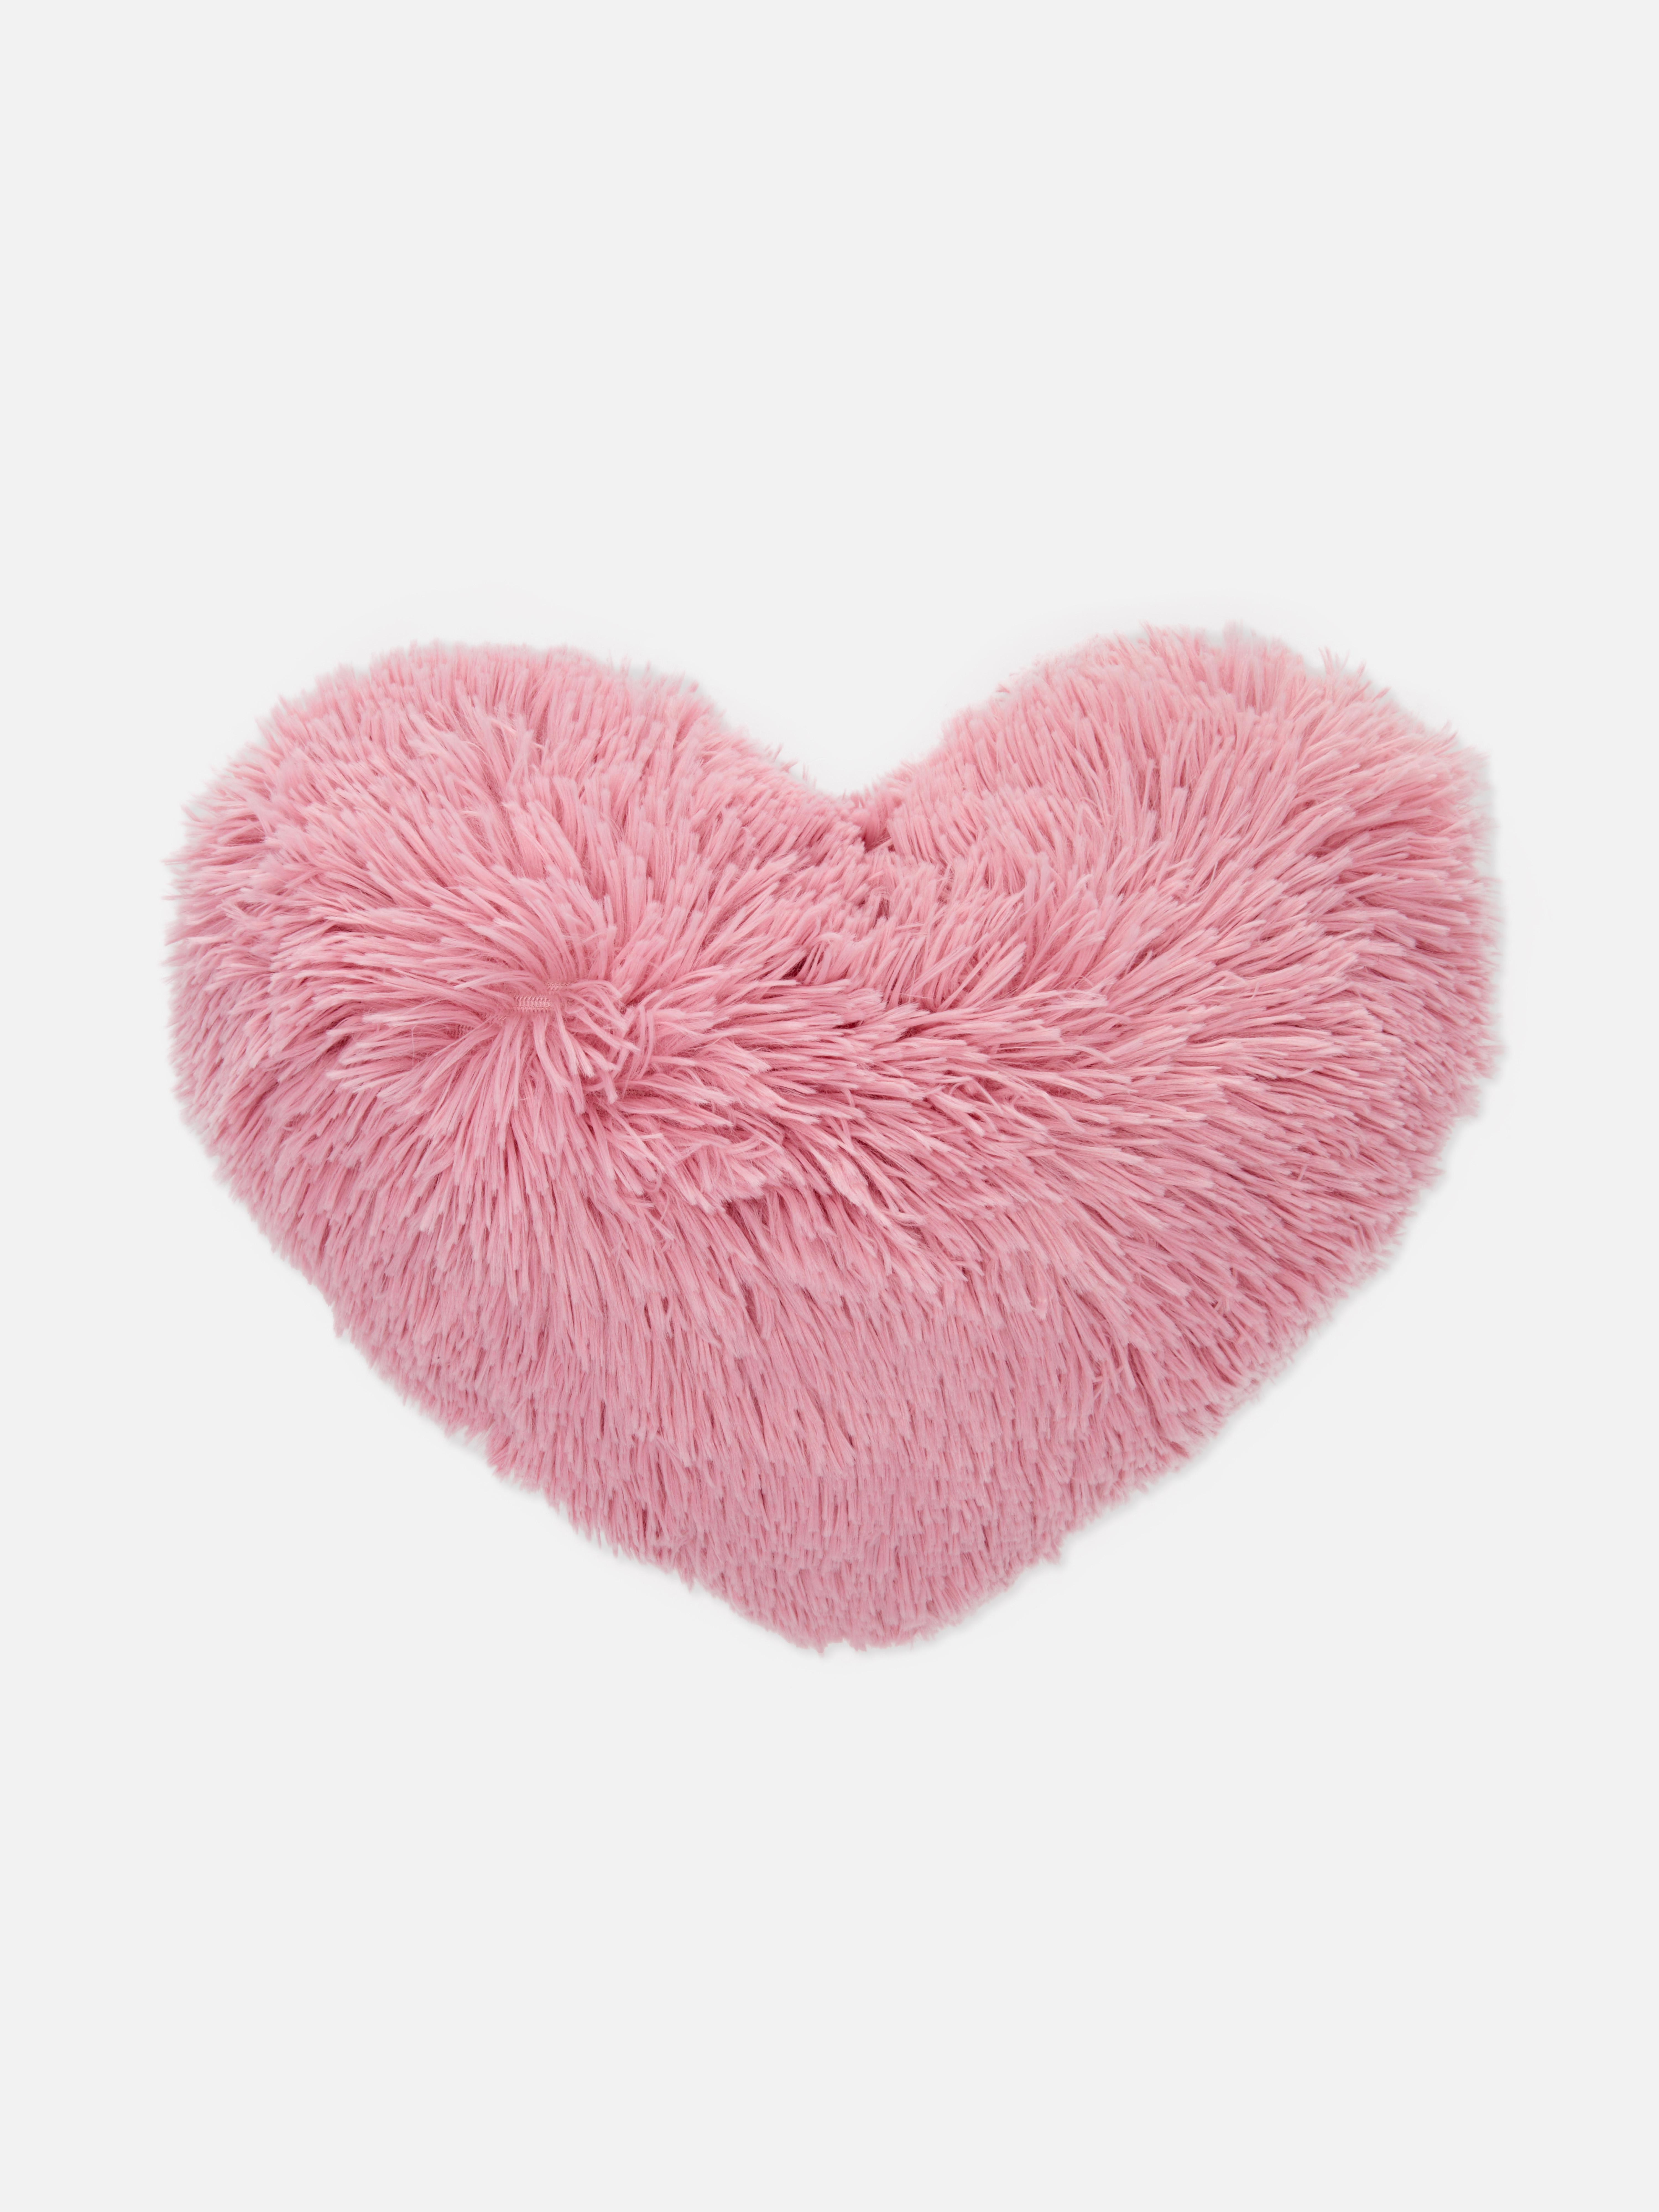 Faux Fur Heart Shaped Cushion